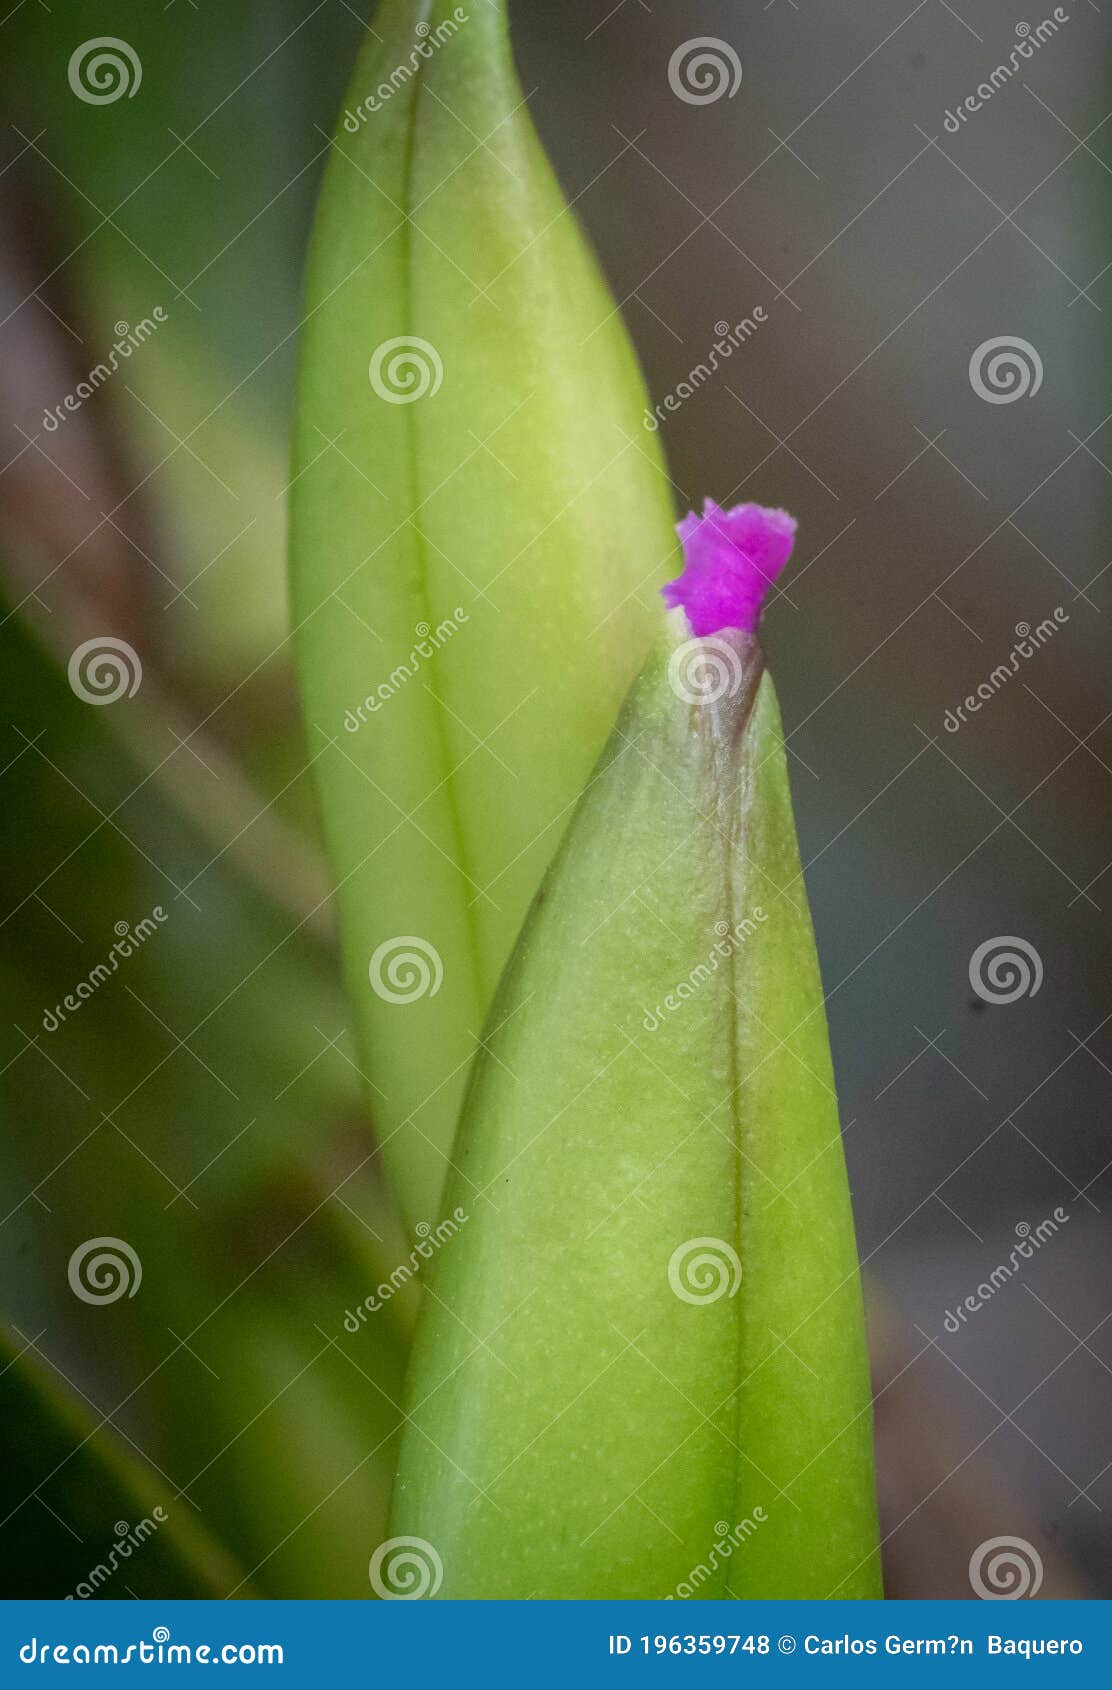 pequeÃÂ±a orquidea comenzando a florecer